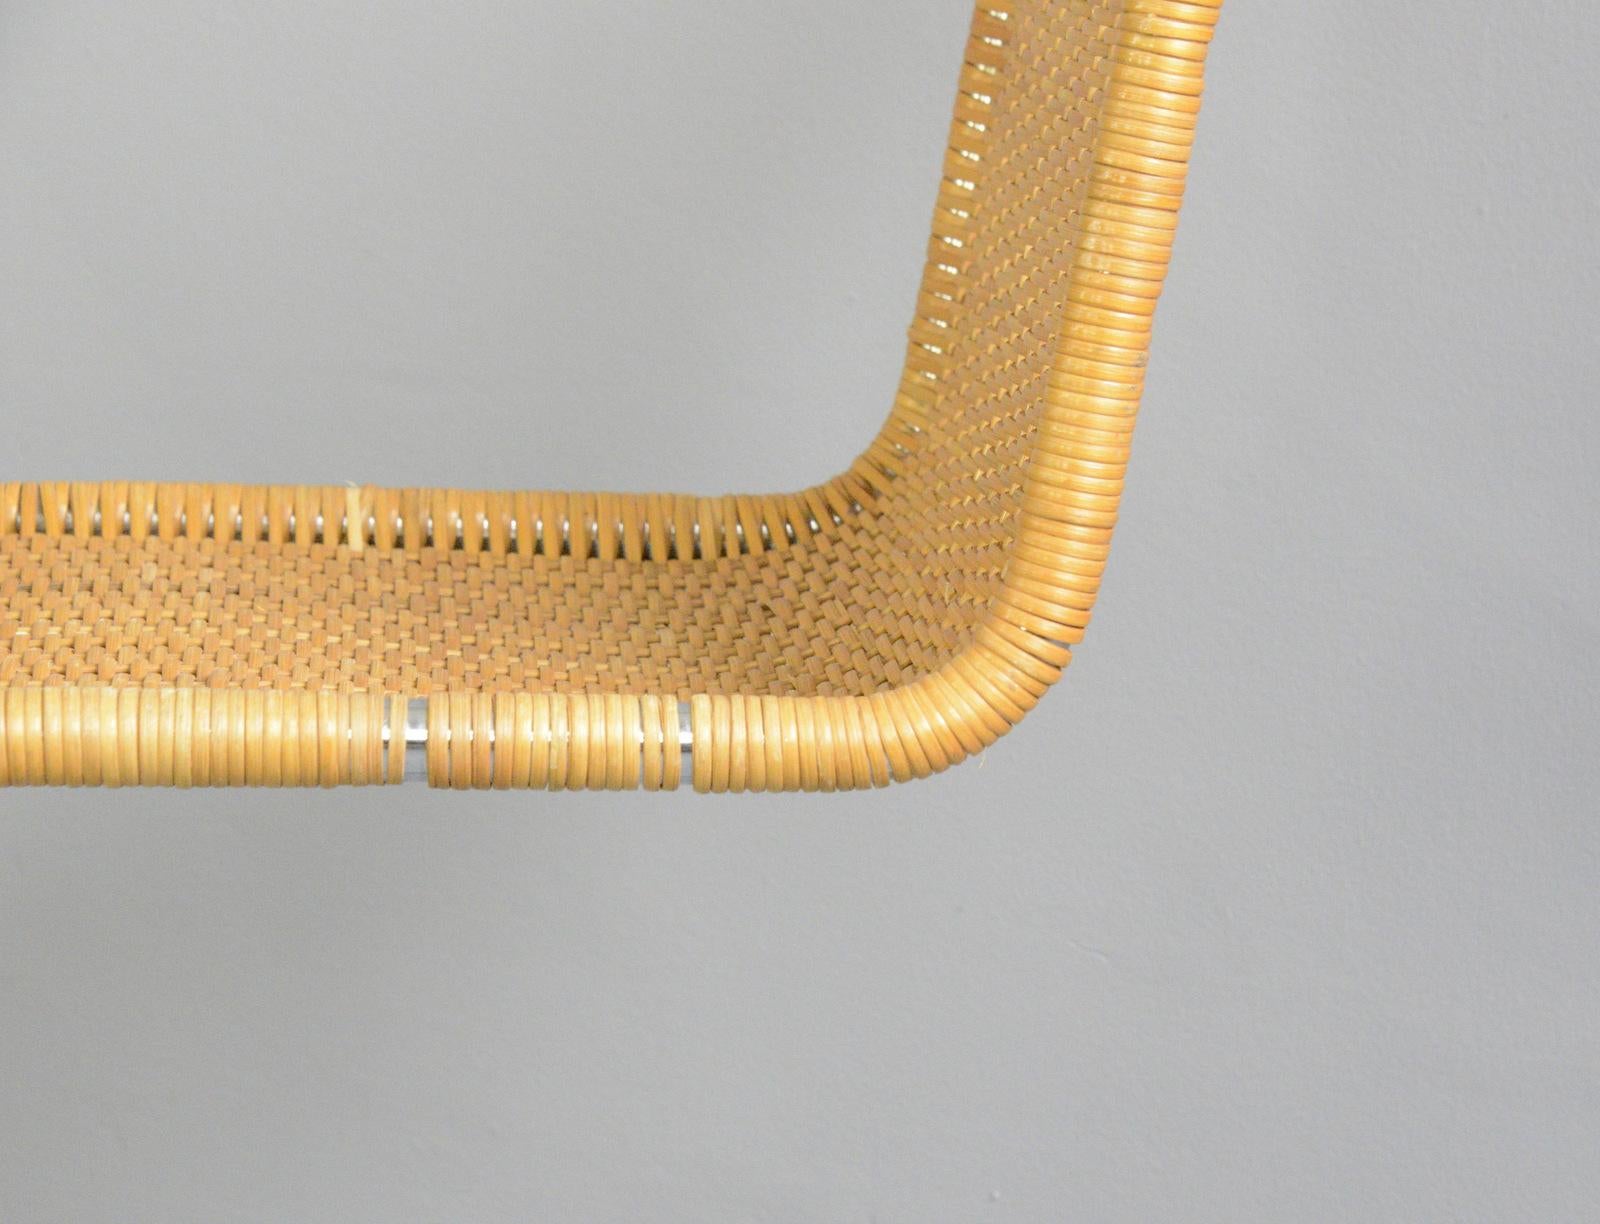 German Bauhaus MR10 Chair by Ludwig Mies van der Rohe